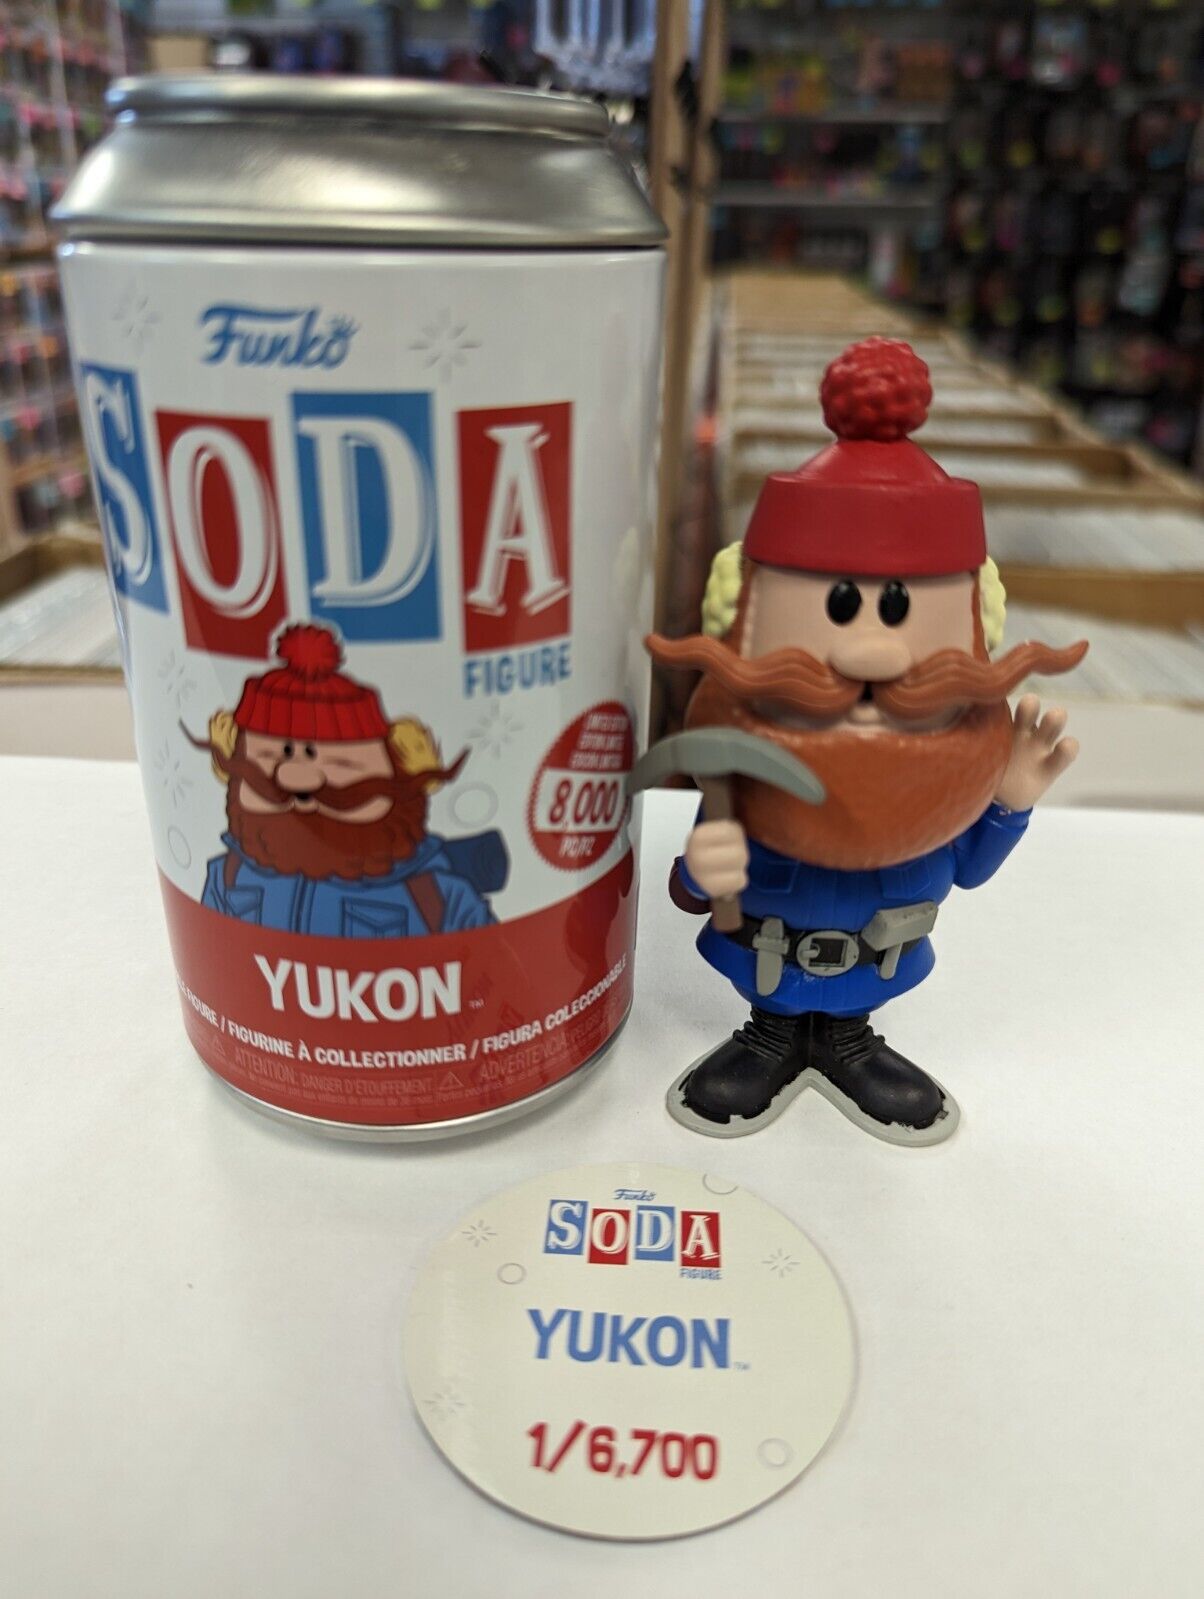 Funko Soda Yukon 1/6700